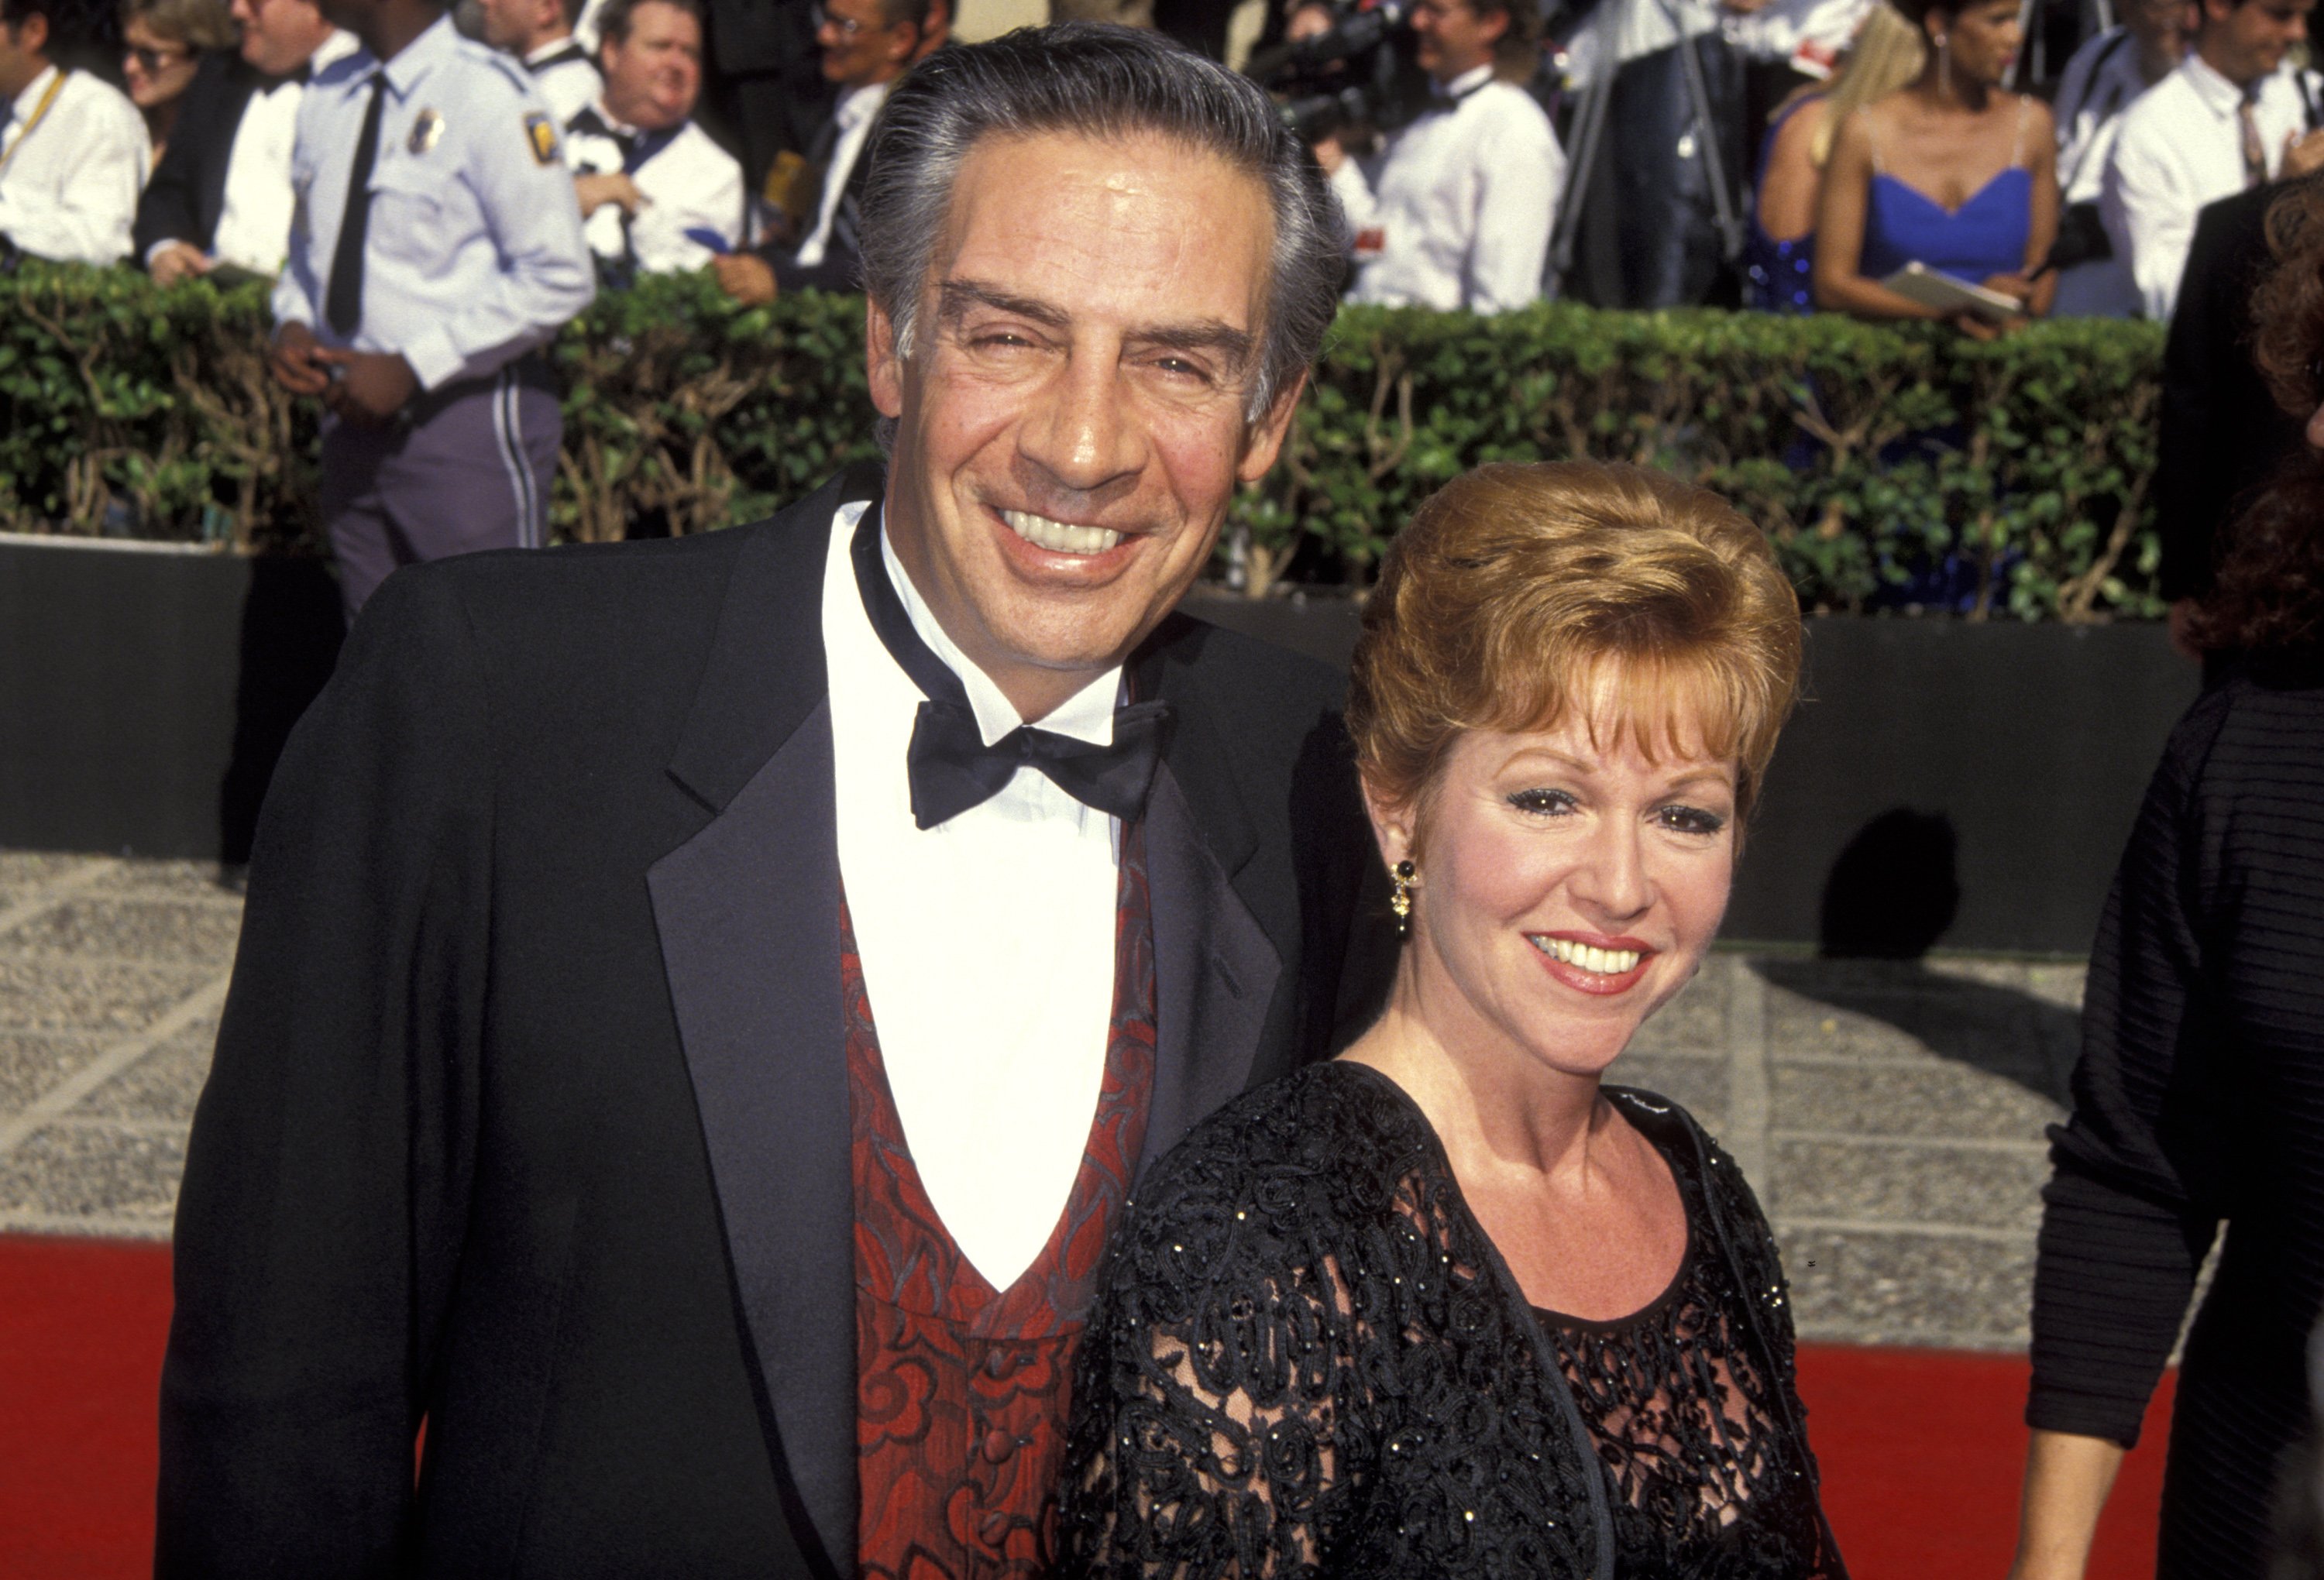 Jerry orbach ve elaine orbach, pasadena, kaliforniya'da düzenlenen 44. yıllık emmy ödüllerinde.  |  Kaynak: Getty Images